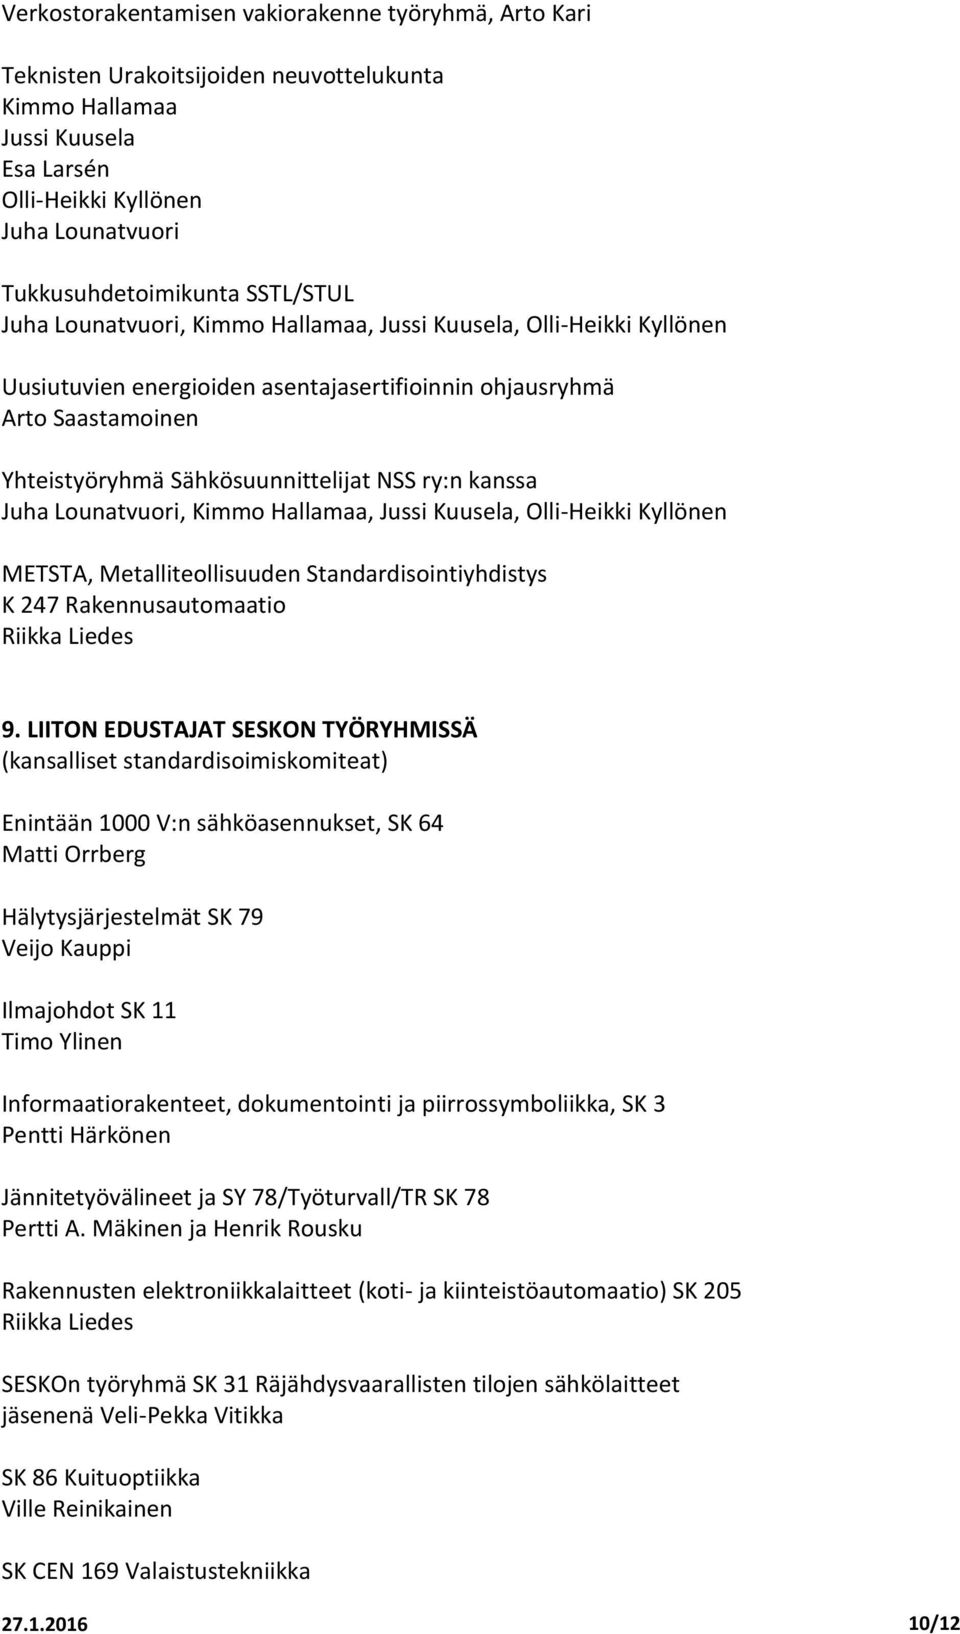 Kuusela, METSTA, Metalliteollisuuden Standardisointiyhdistys K 247 Rakennusautomaatio Riikka Liedes 9.